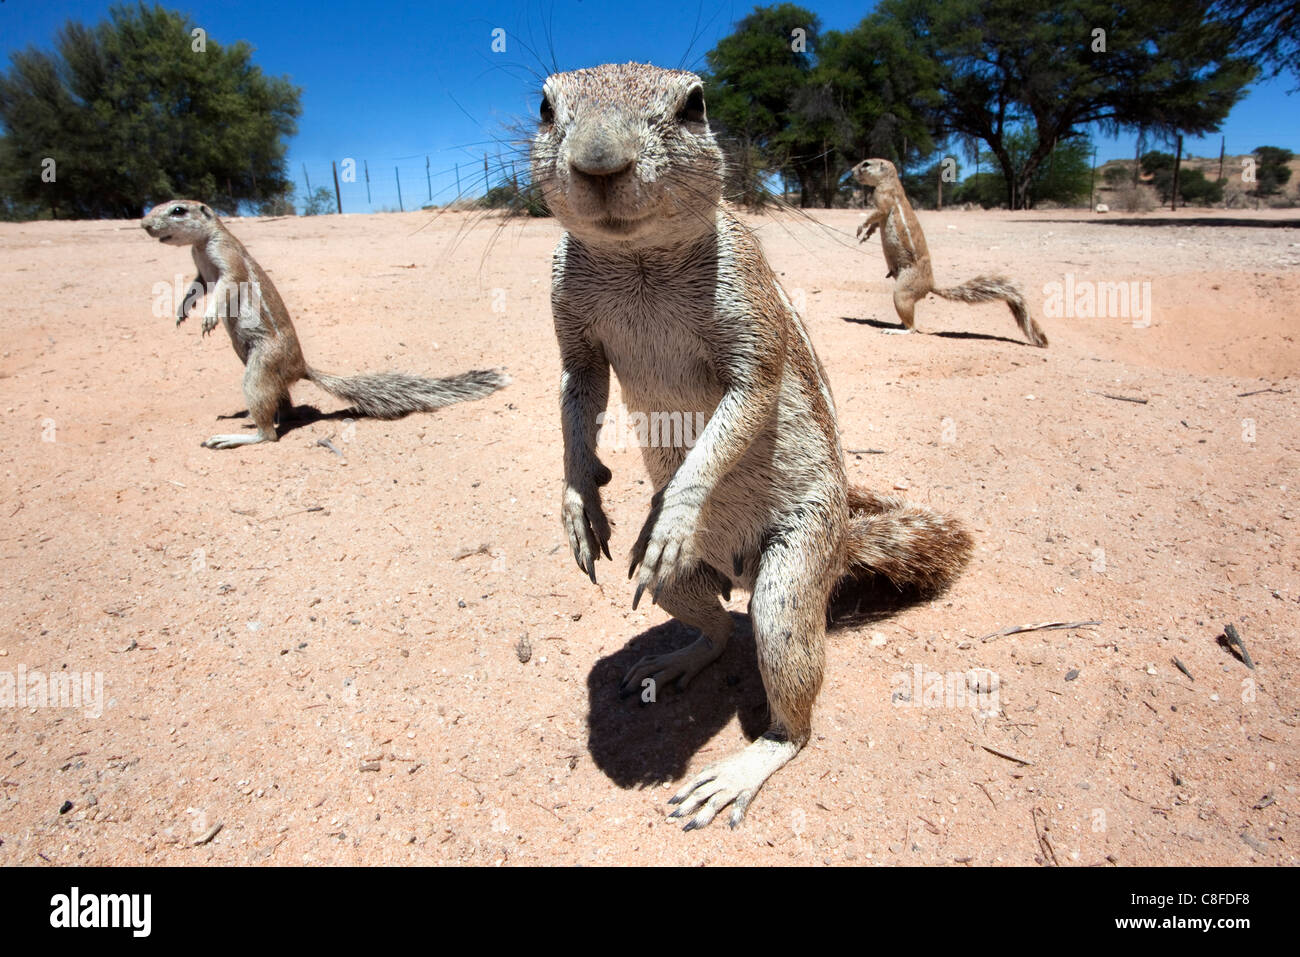 Les écureuils terrestres (Ha83 inauris, Kgalagadi Transfrontier Park, Northern Cape, Afrique du Sud Banque D'Images